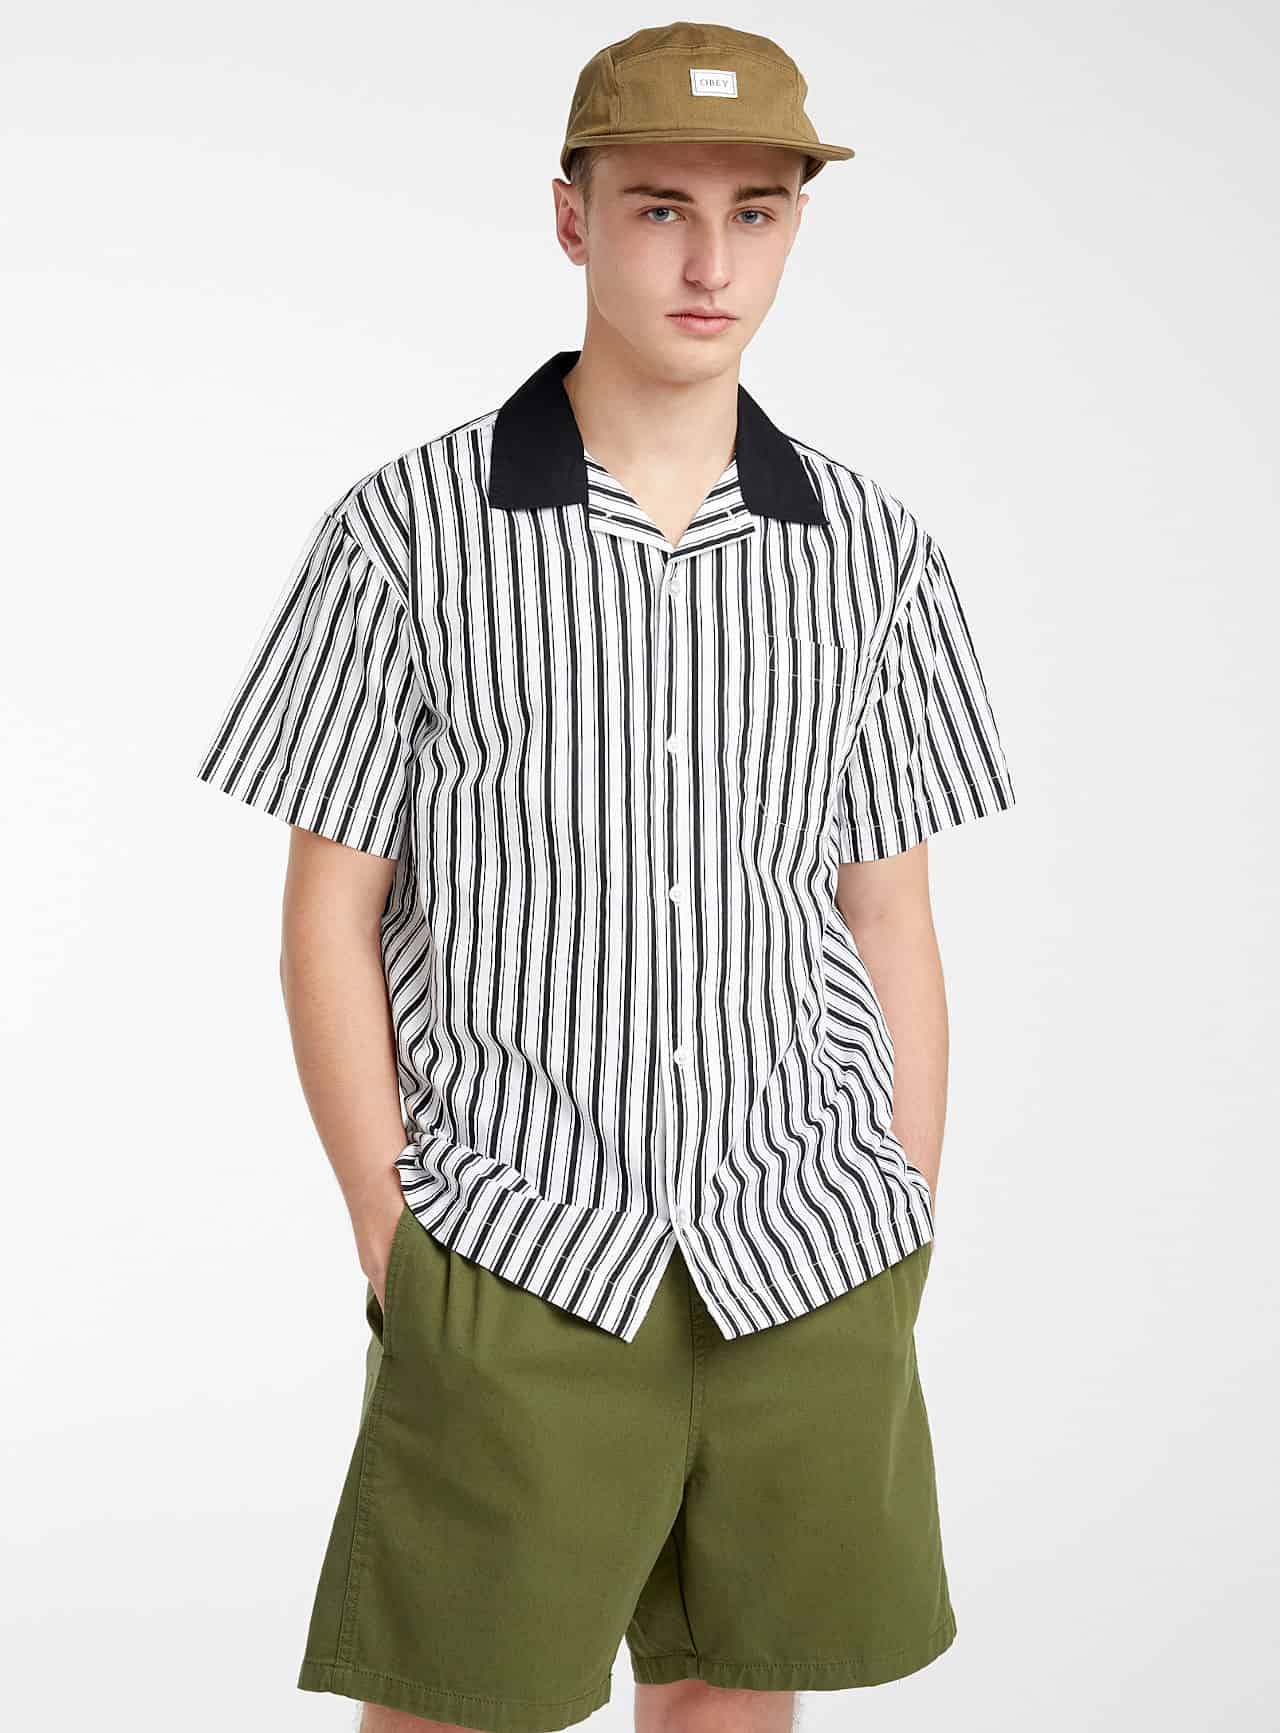 Male model men's striped shirts